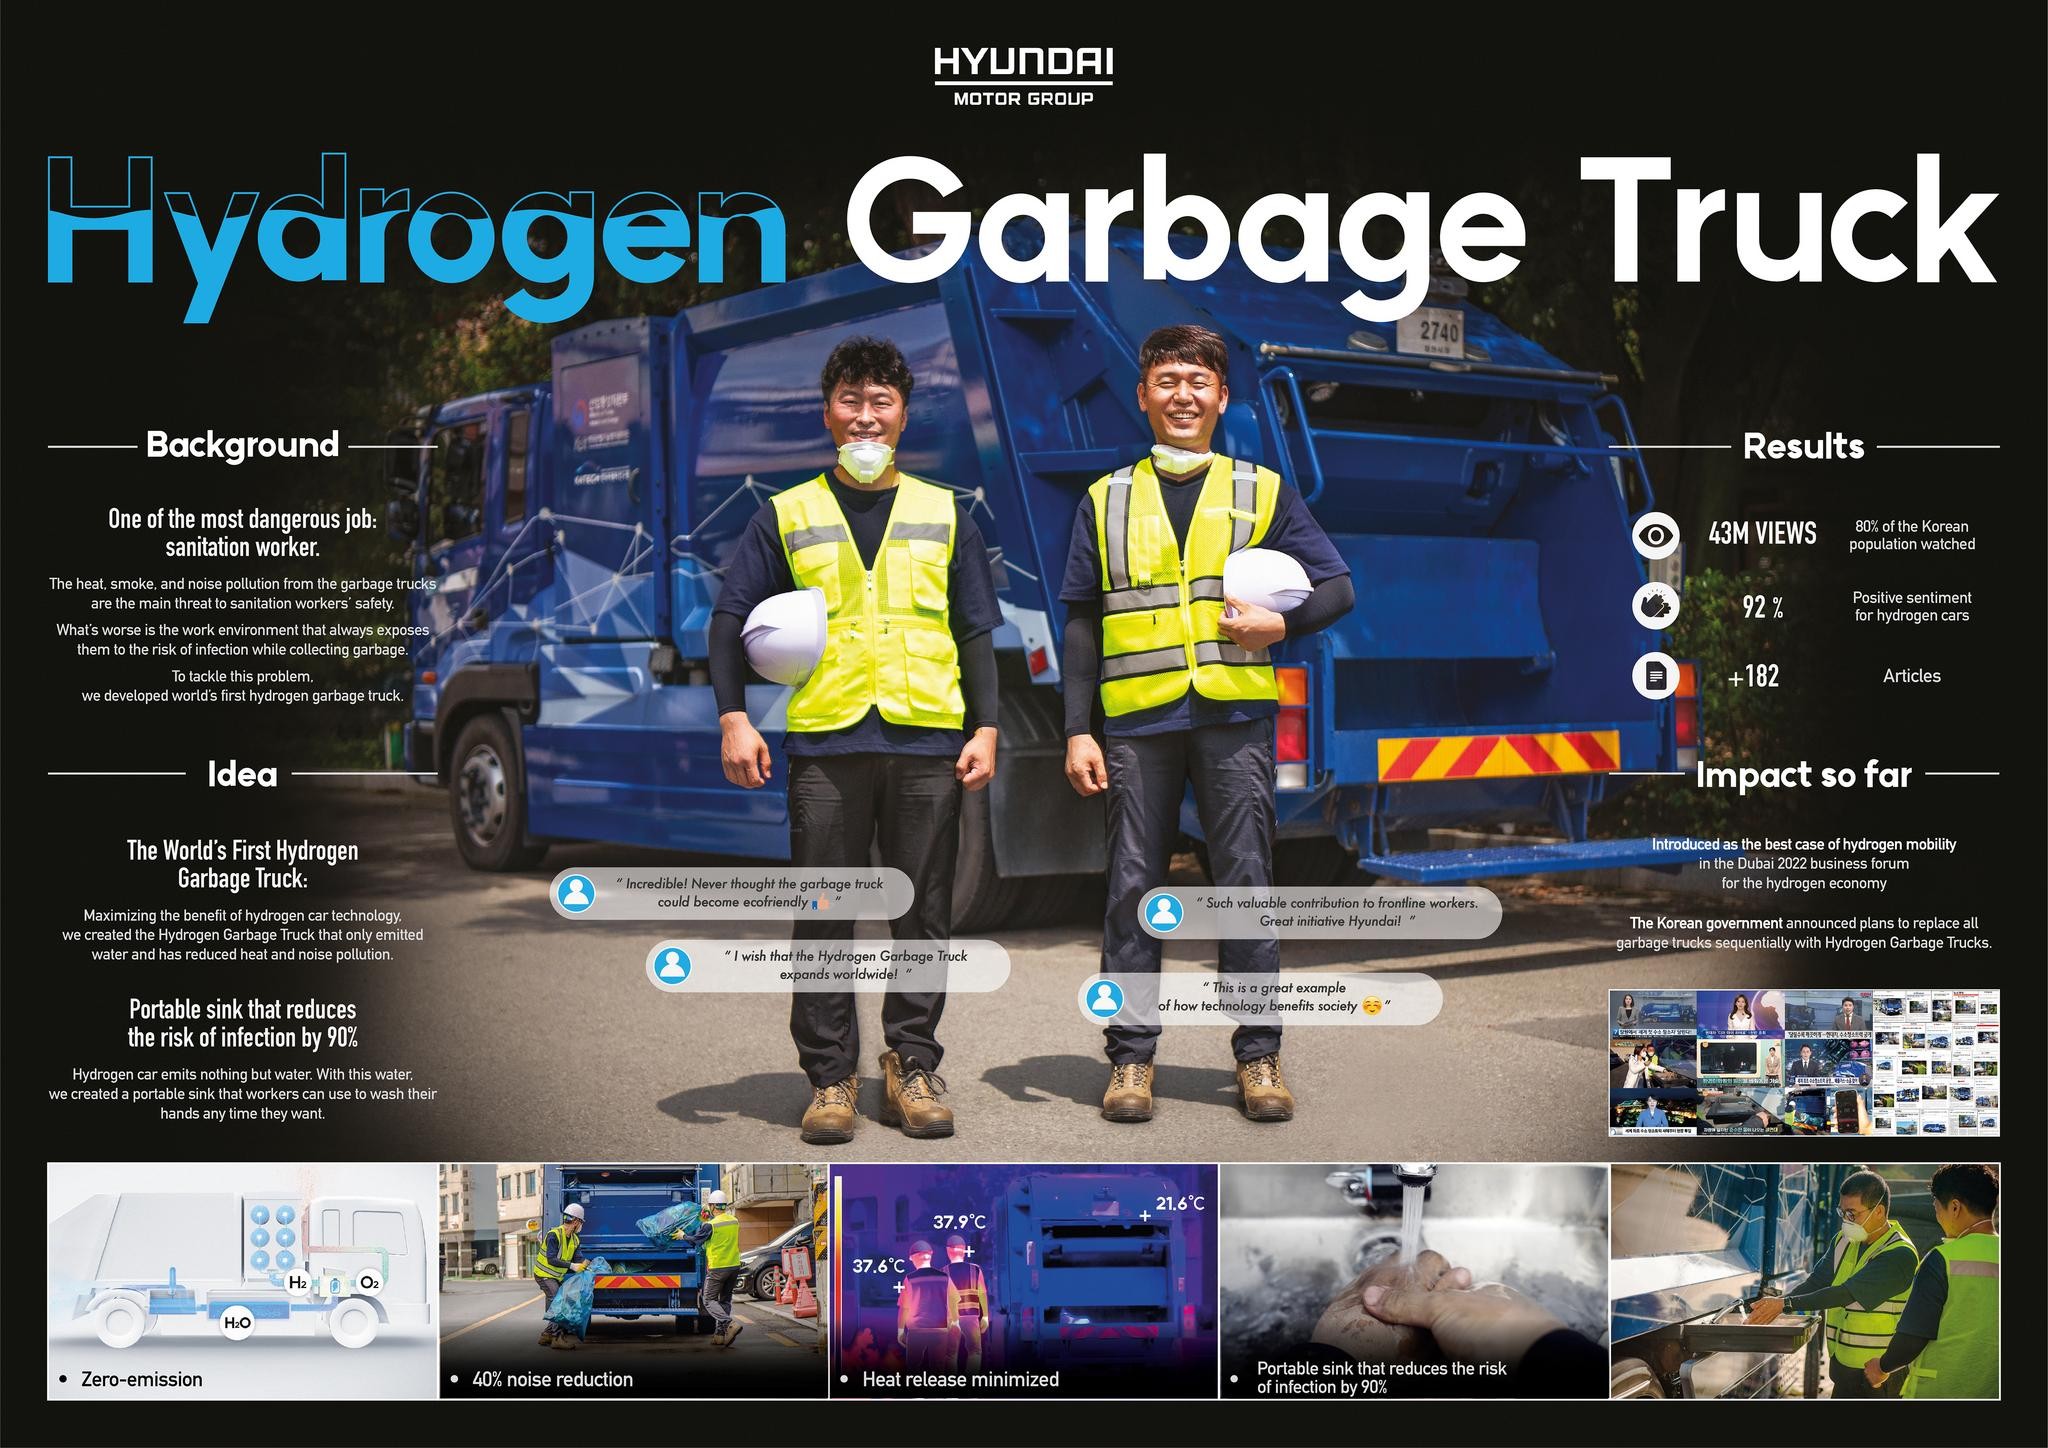 Hydrogen Garbage Truck